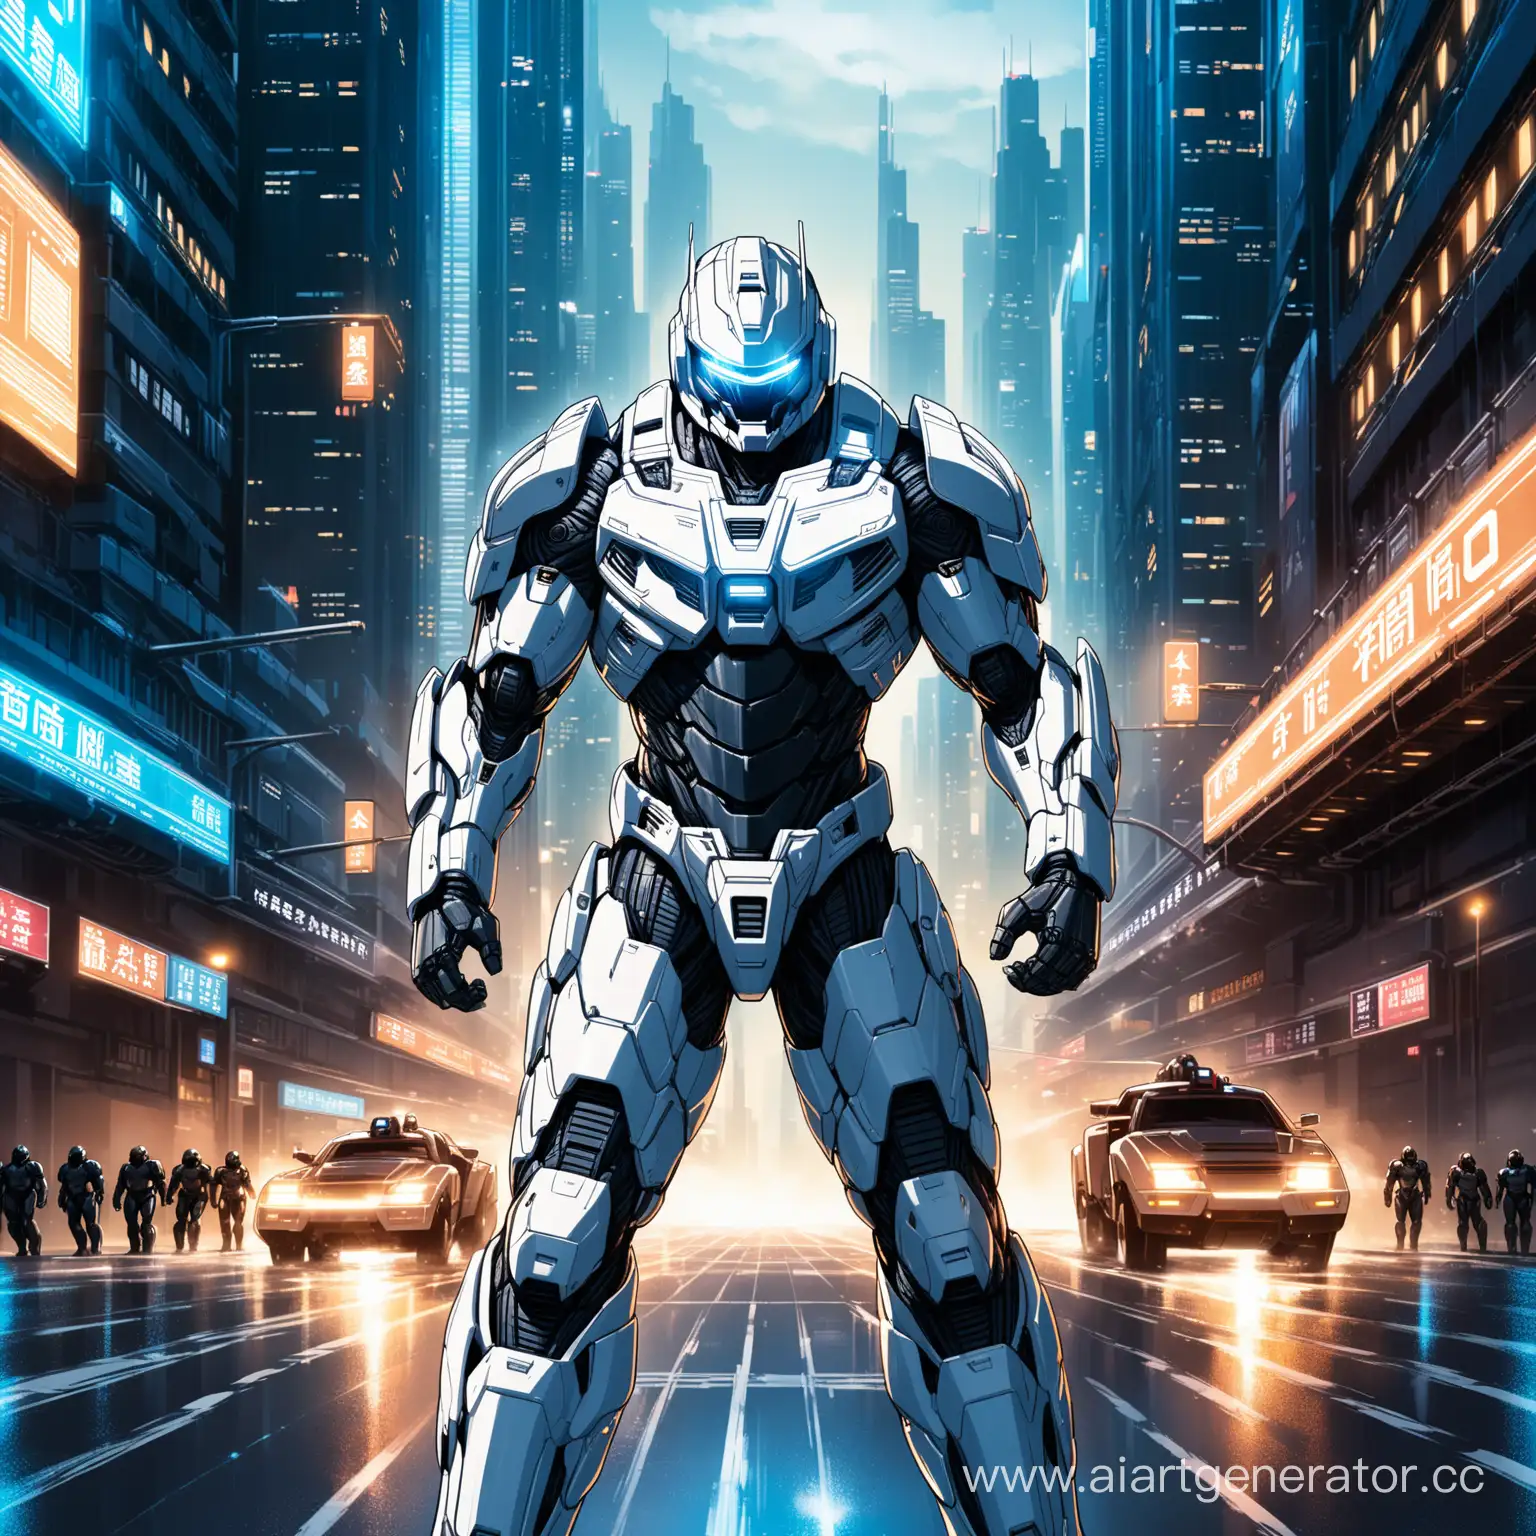 В позе Противотроп с приземлением на землю на три точки, Высокотехнологичный, брутальный, мощный, тяжело бронированный белоснежный костюм Робокопа, имеющий дополнительную усиленную броню в стиле Трансформер, оснащен самыми передавшими технологиями во вселенной Robocop далекого будущего,  открытый шлем, широкие плечи, телосложением бодибилдера на фоне ночных улиц мегаполиса